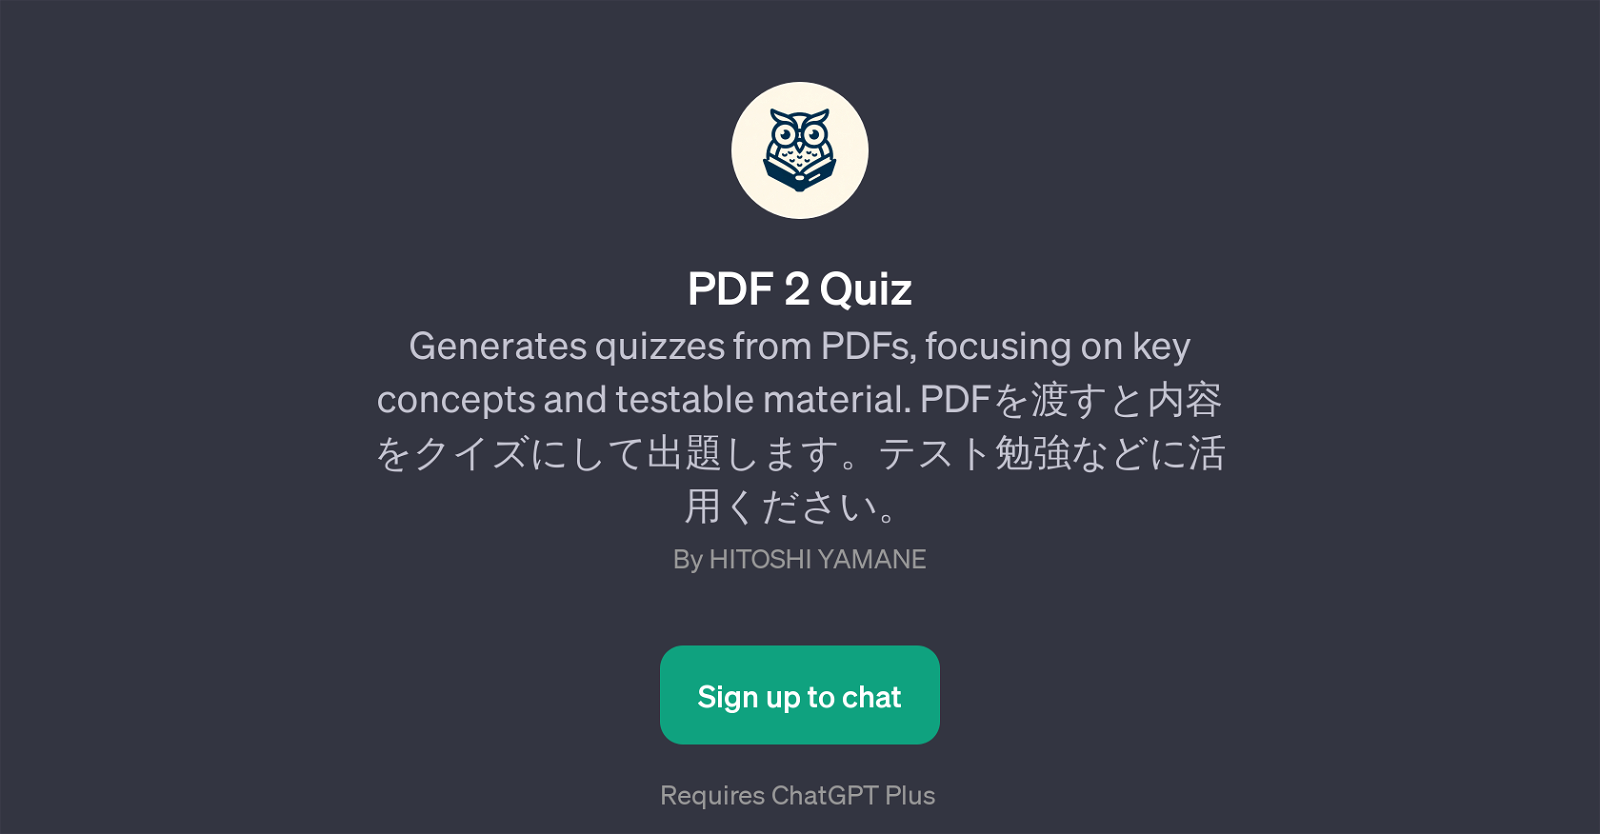 PDF 2 Quiz website